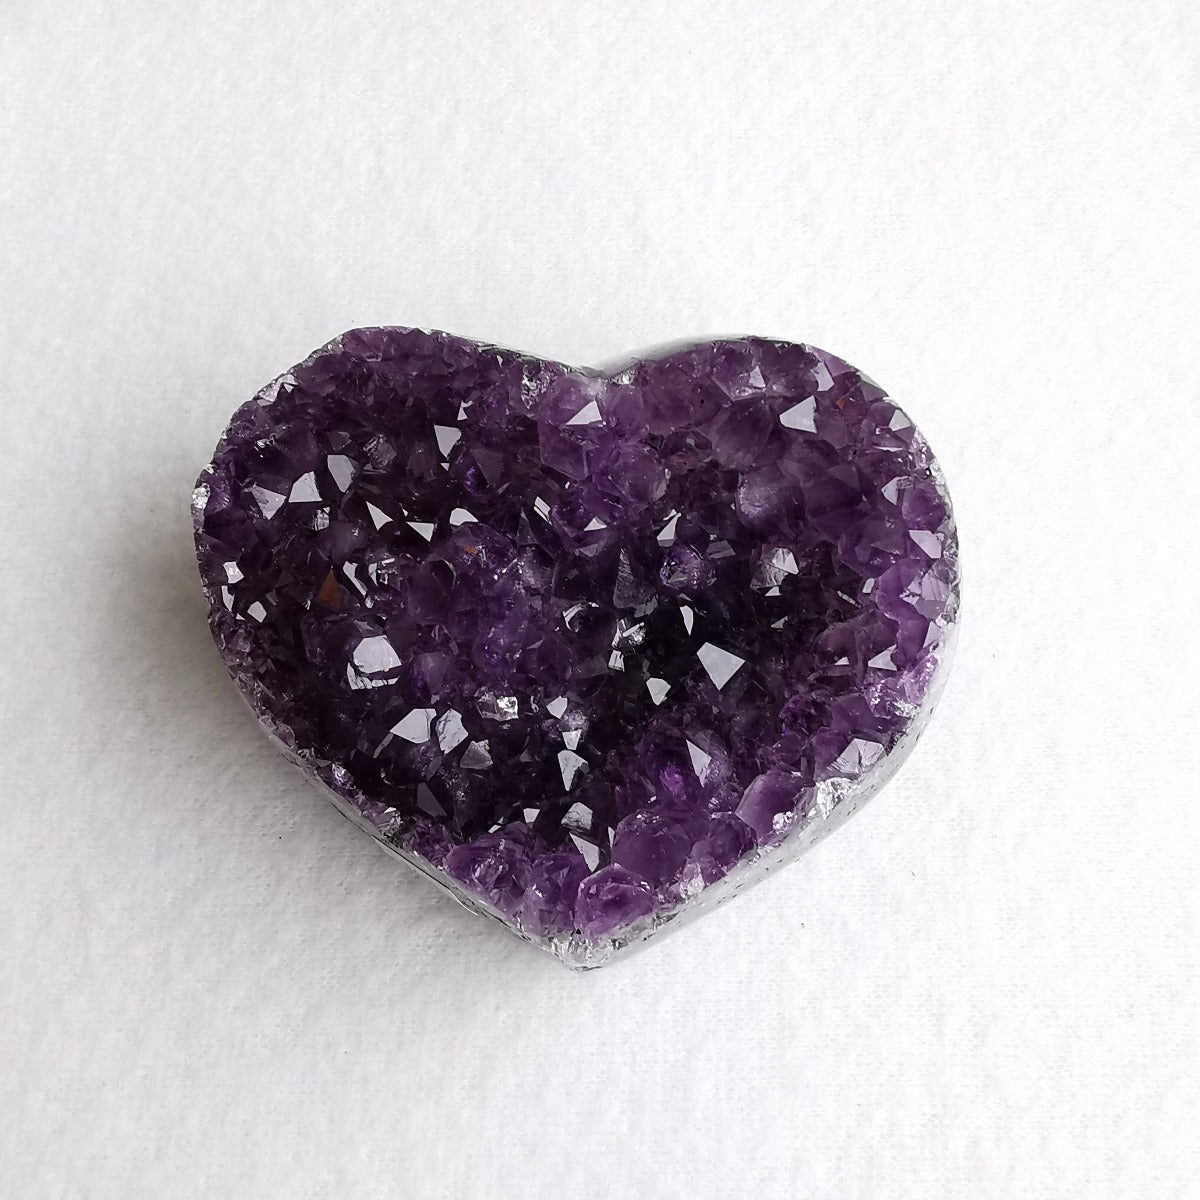 Amethyst krystallhjerte nr.1 - Amethyst Crystal Heart